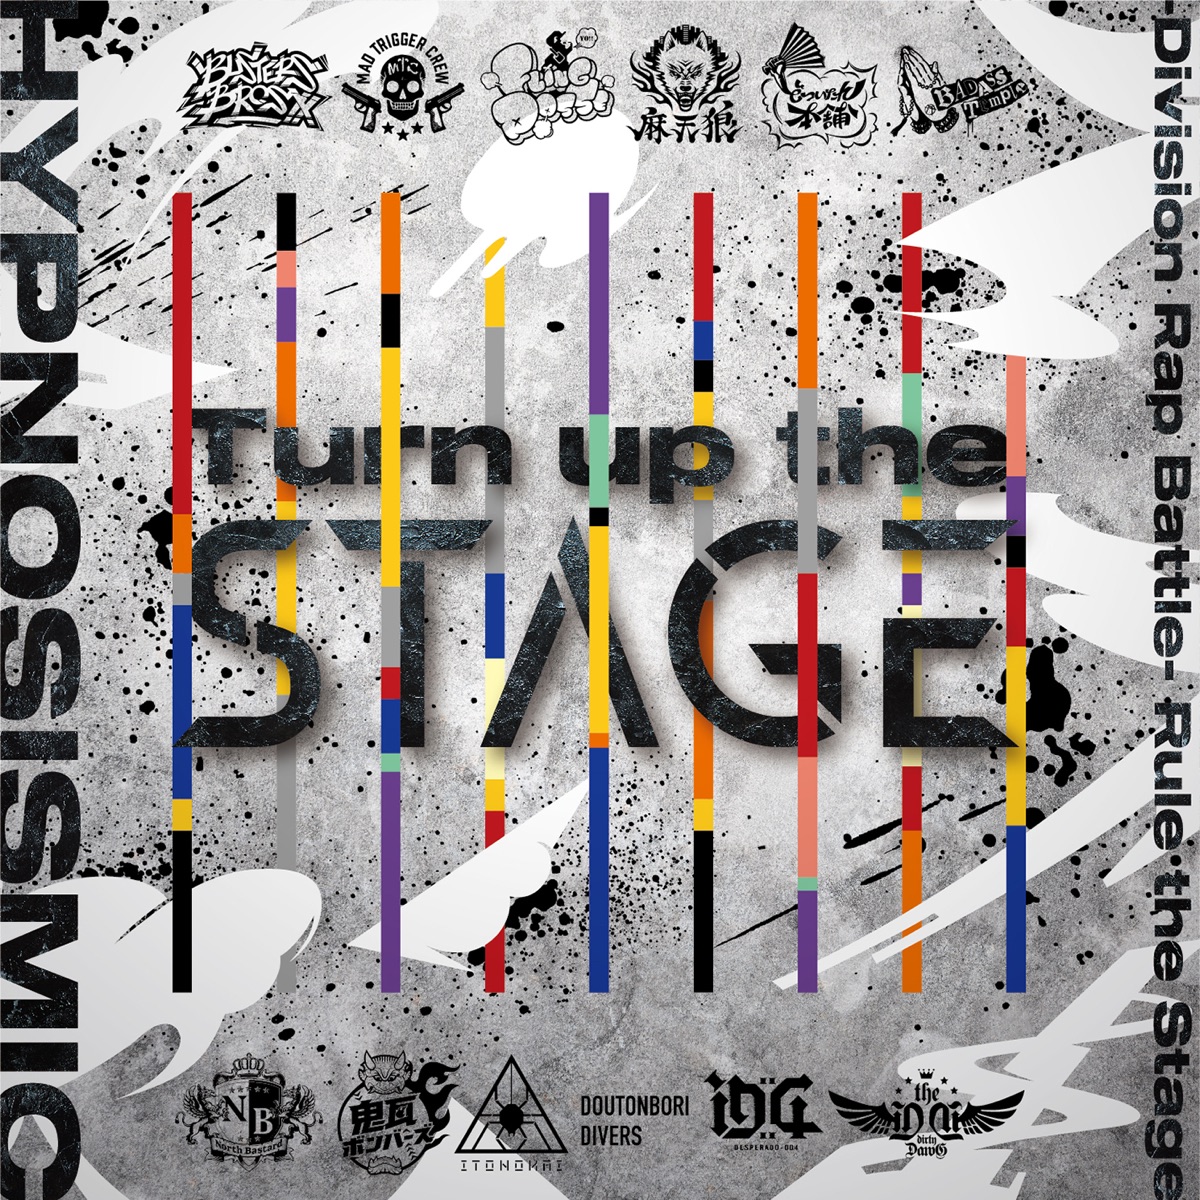 『ヒプノシスマイク -D.R.B- Rule the Stage (Buster Bros!!!) - Counterfeit Busters』収録の『Turn up the Stage』ジャケット